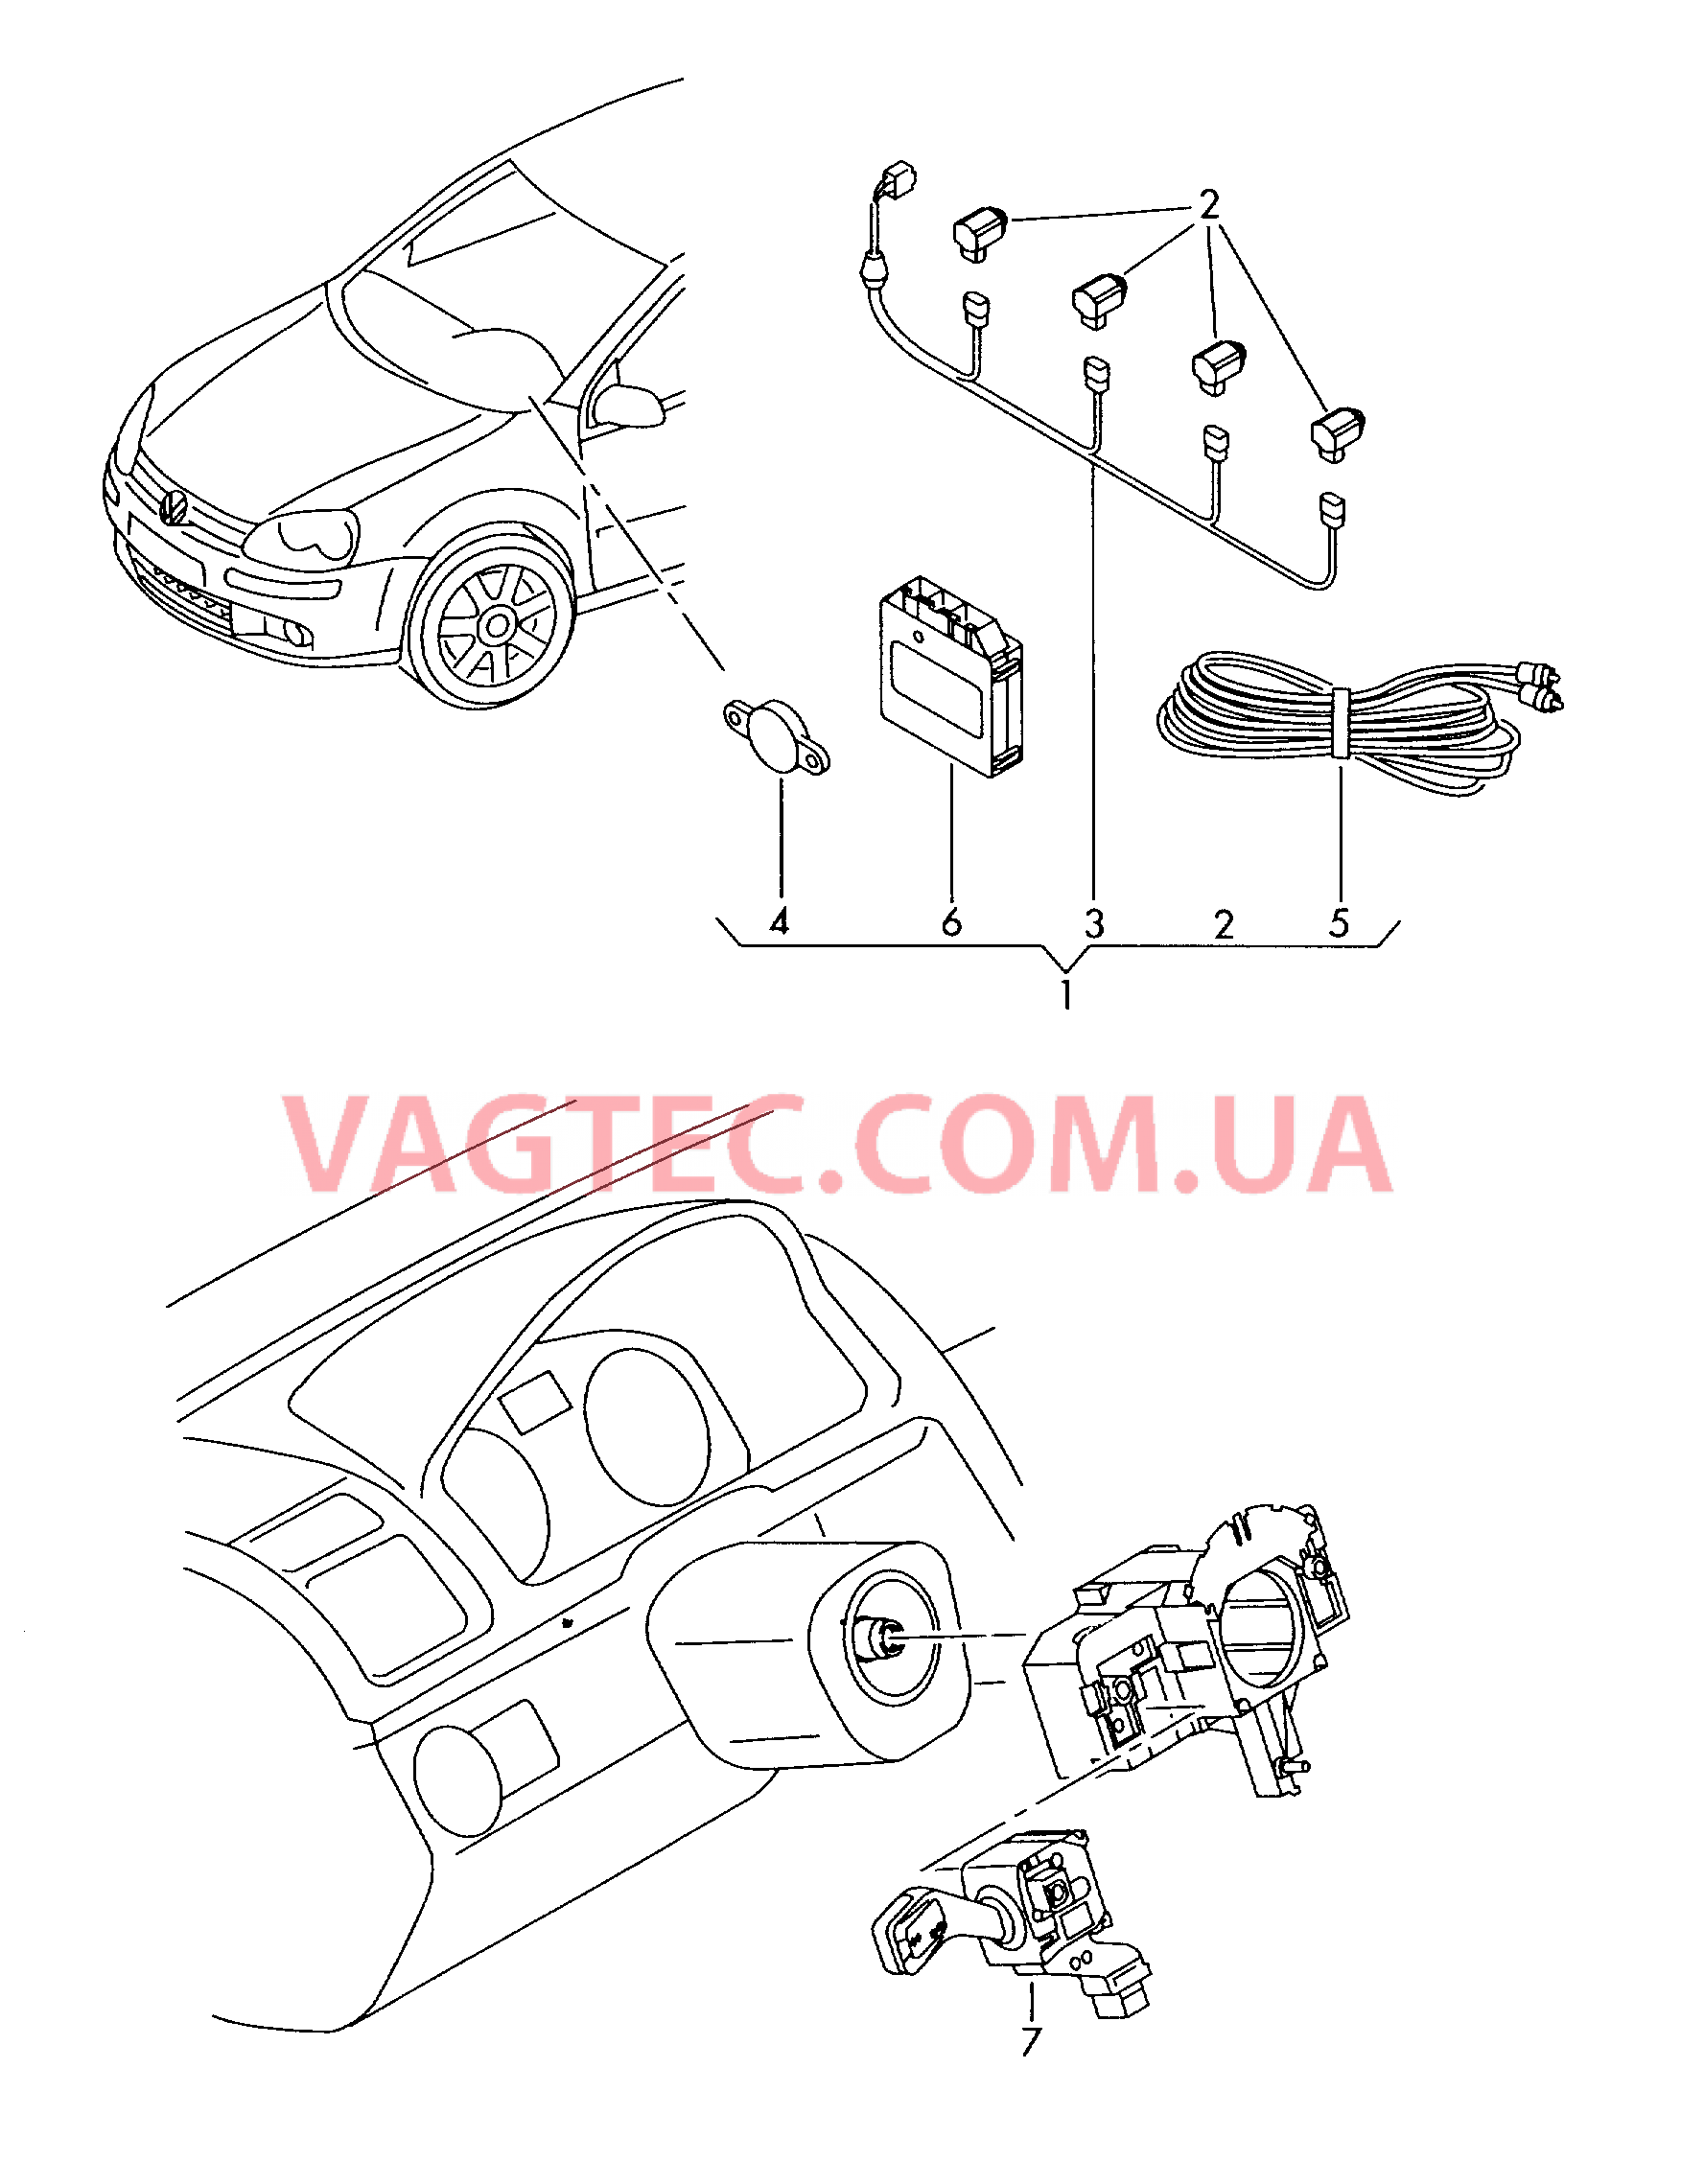 Оригинальные аксессуары Парковочный ассистент Круиз-контроль   для VOLKSWAGEN Beetle.Cabriolet 2015